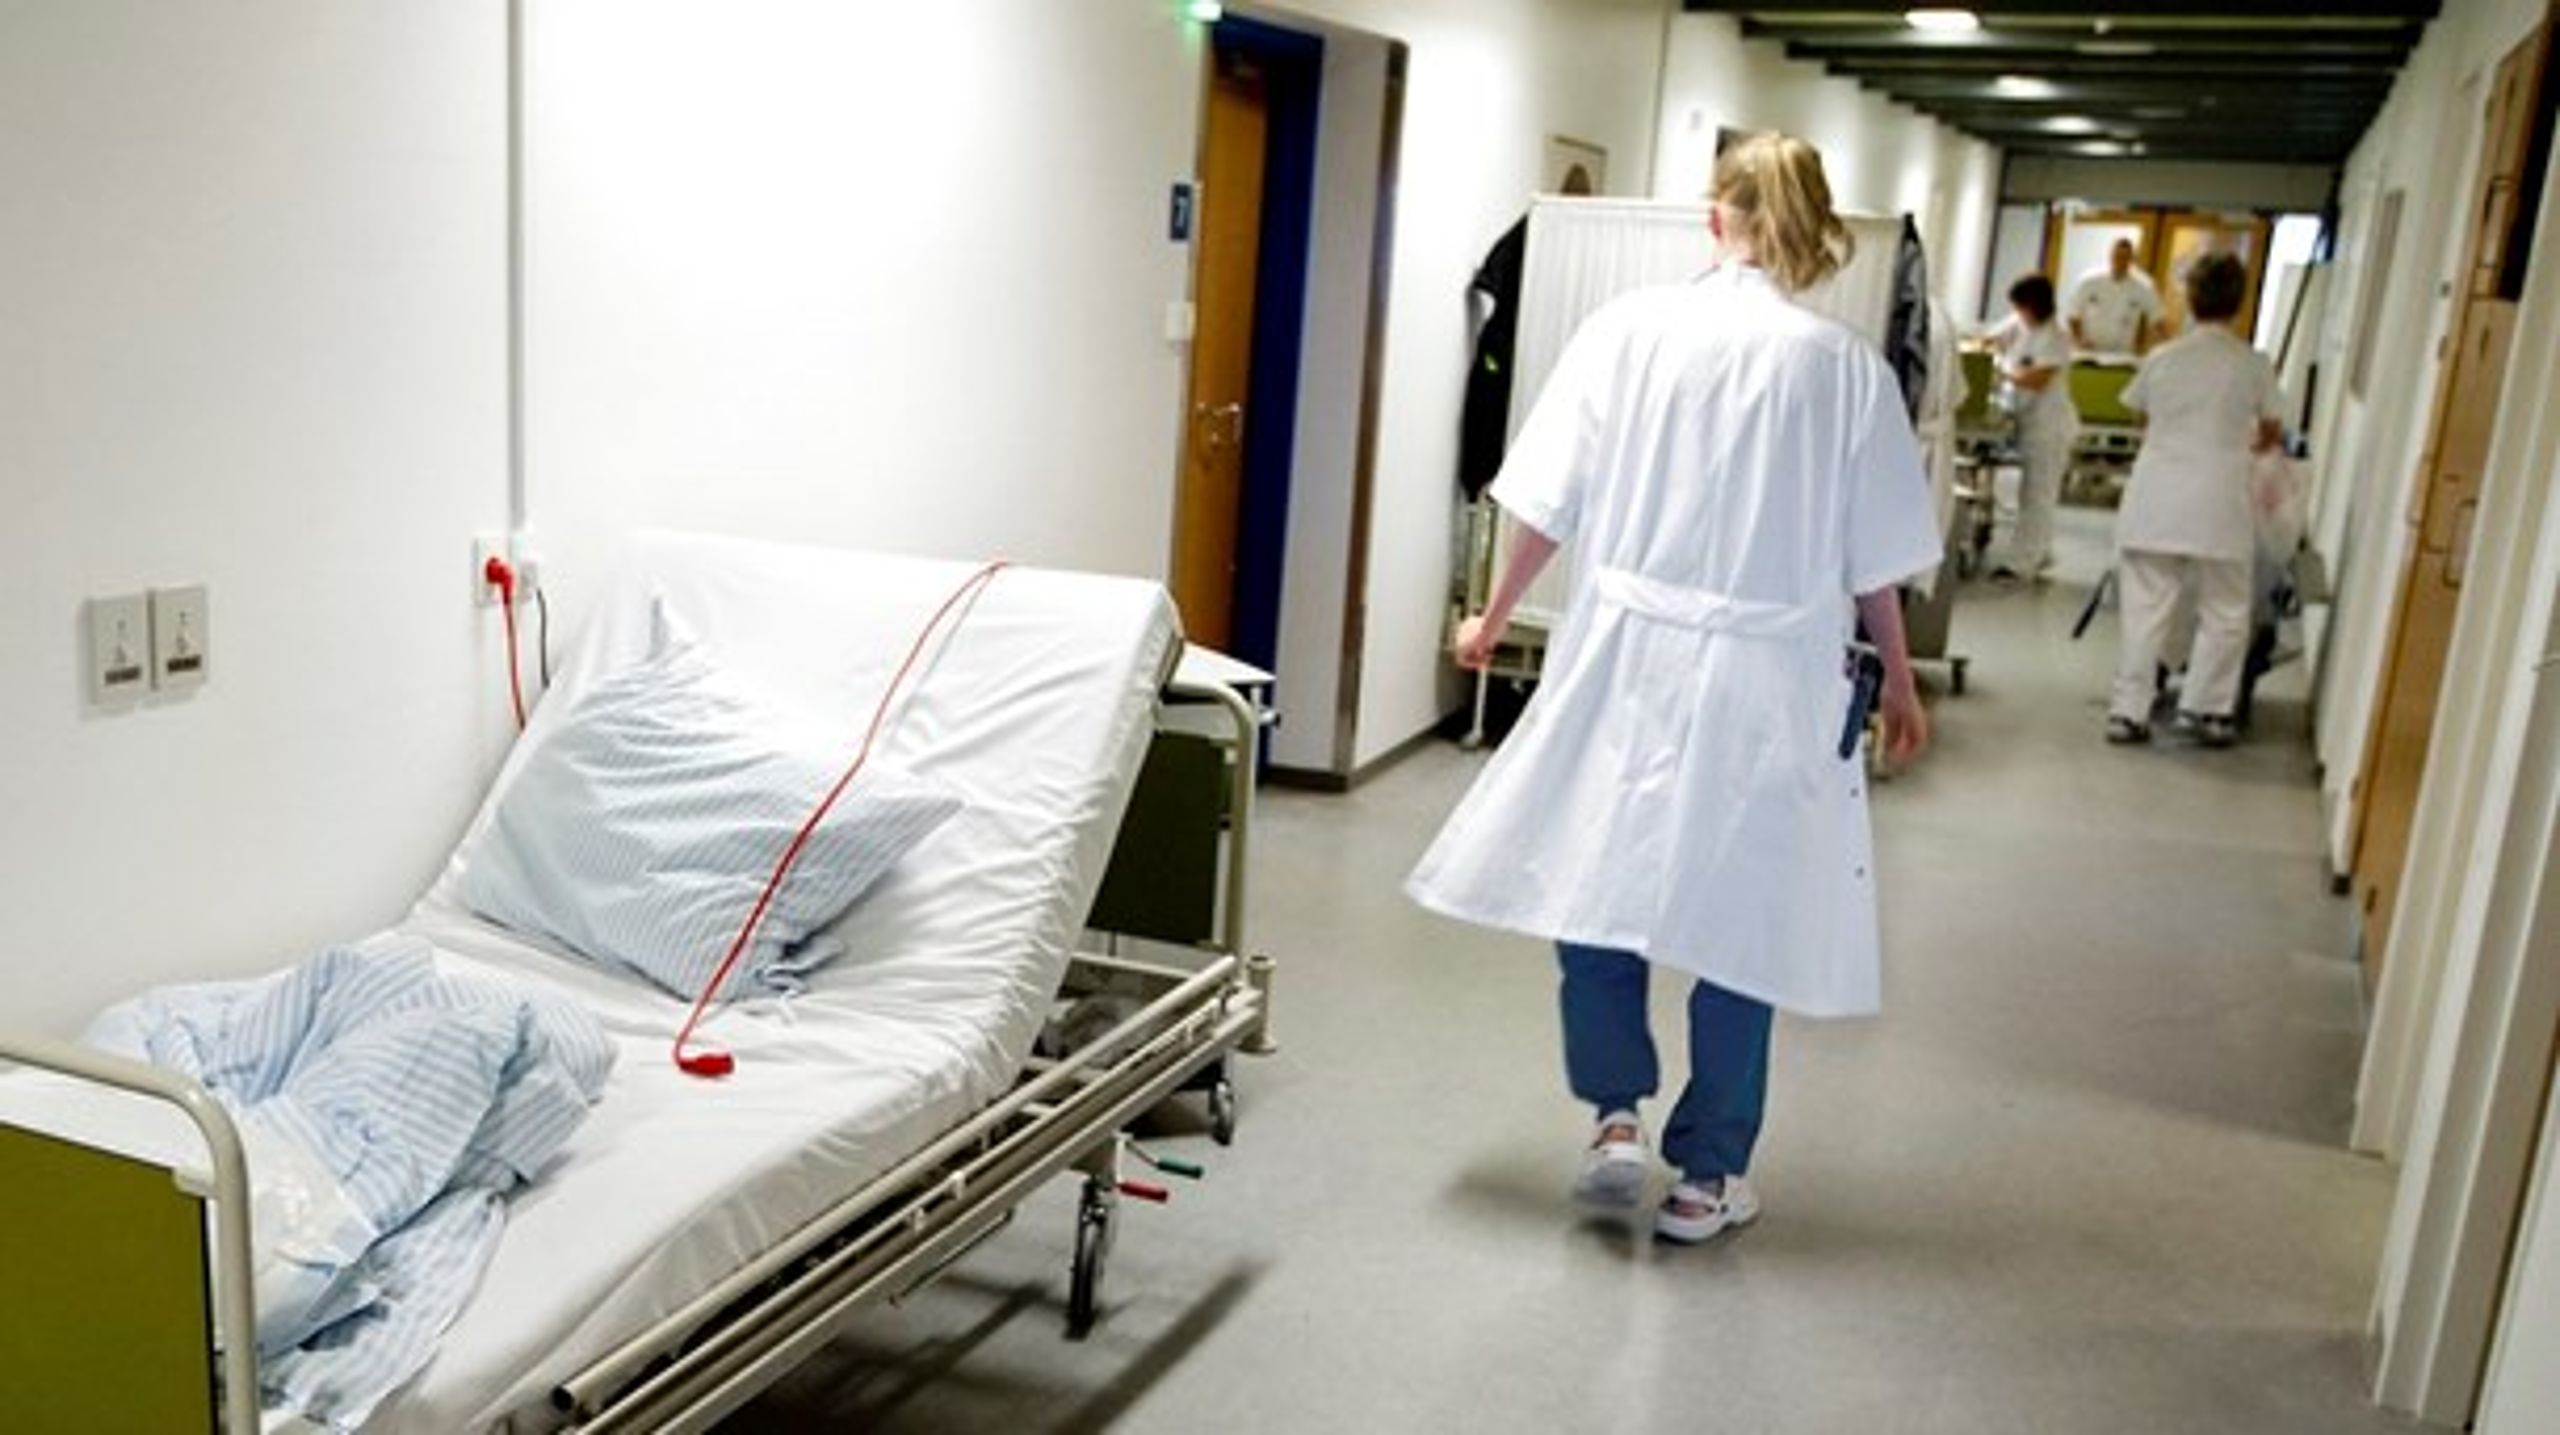 Nyuddannede sygeplejerske forlader hospitalerne, fordi de er bange for at fejlbehandle, mener hospitalsdirektør.